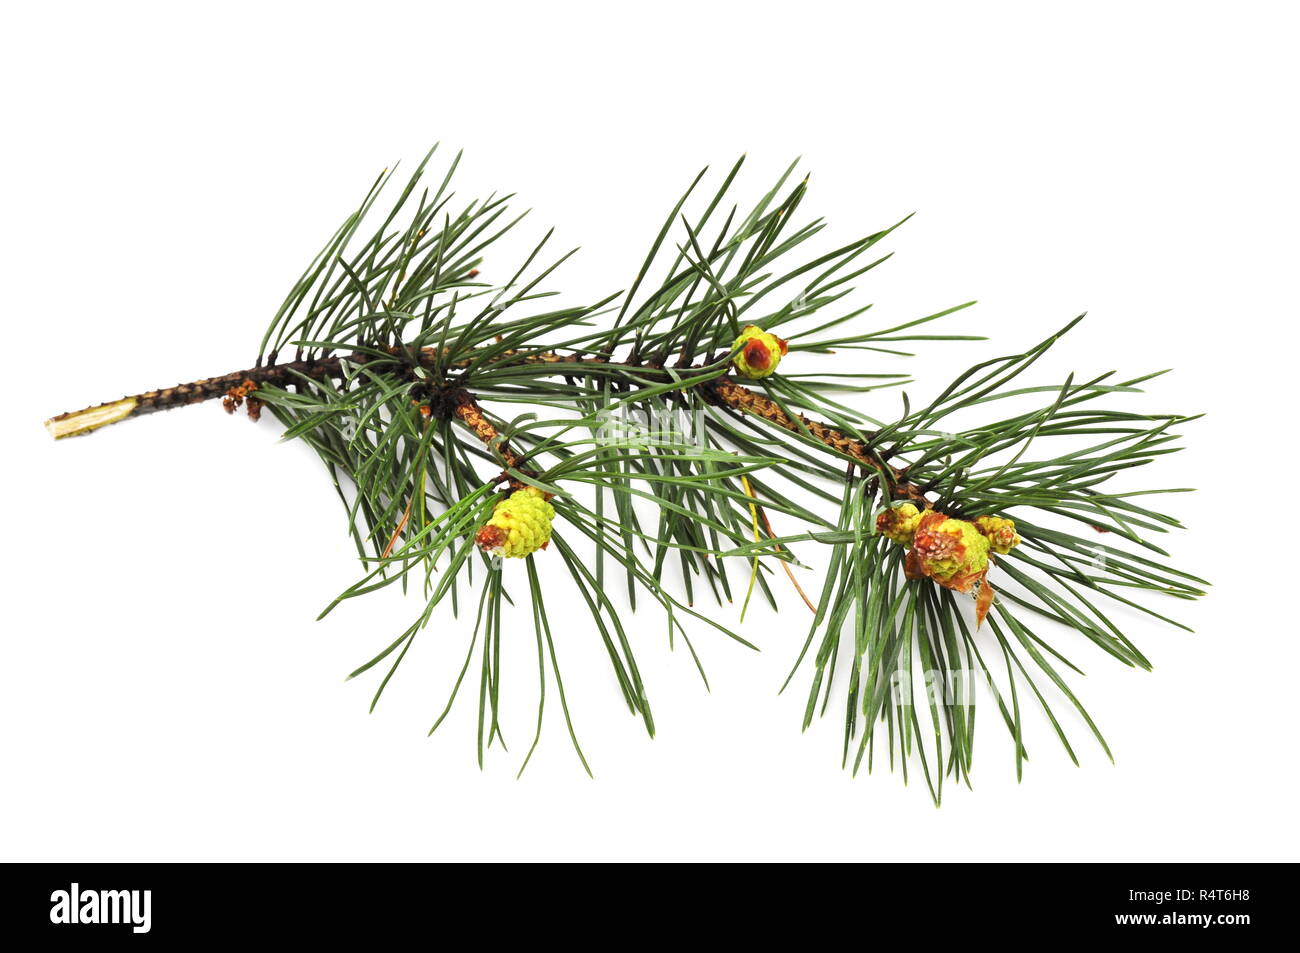 Branch of Pinus sylvestris on white background Stock Photo